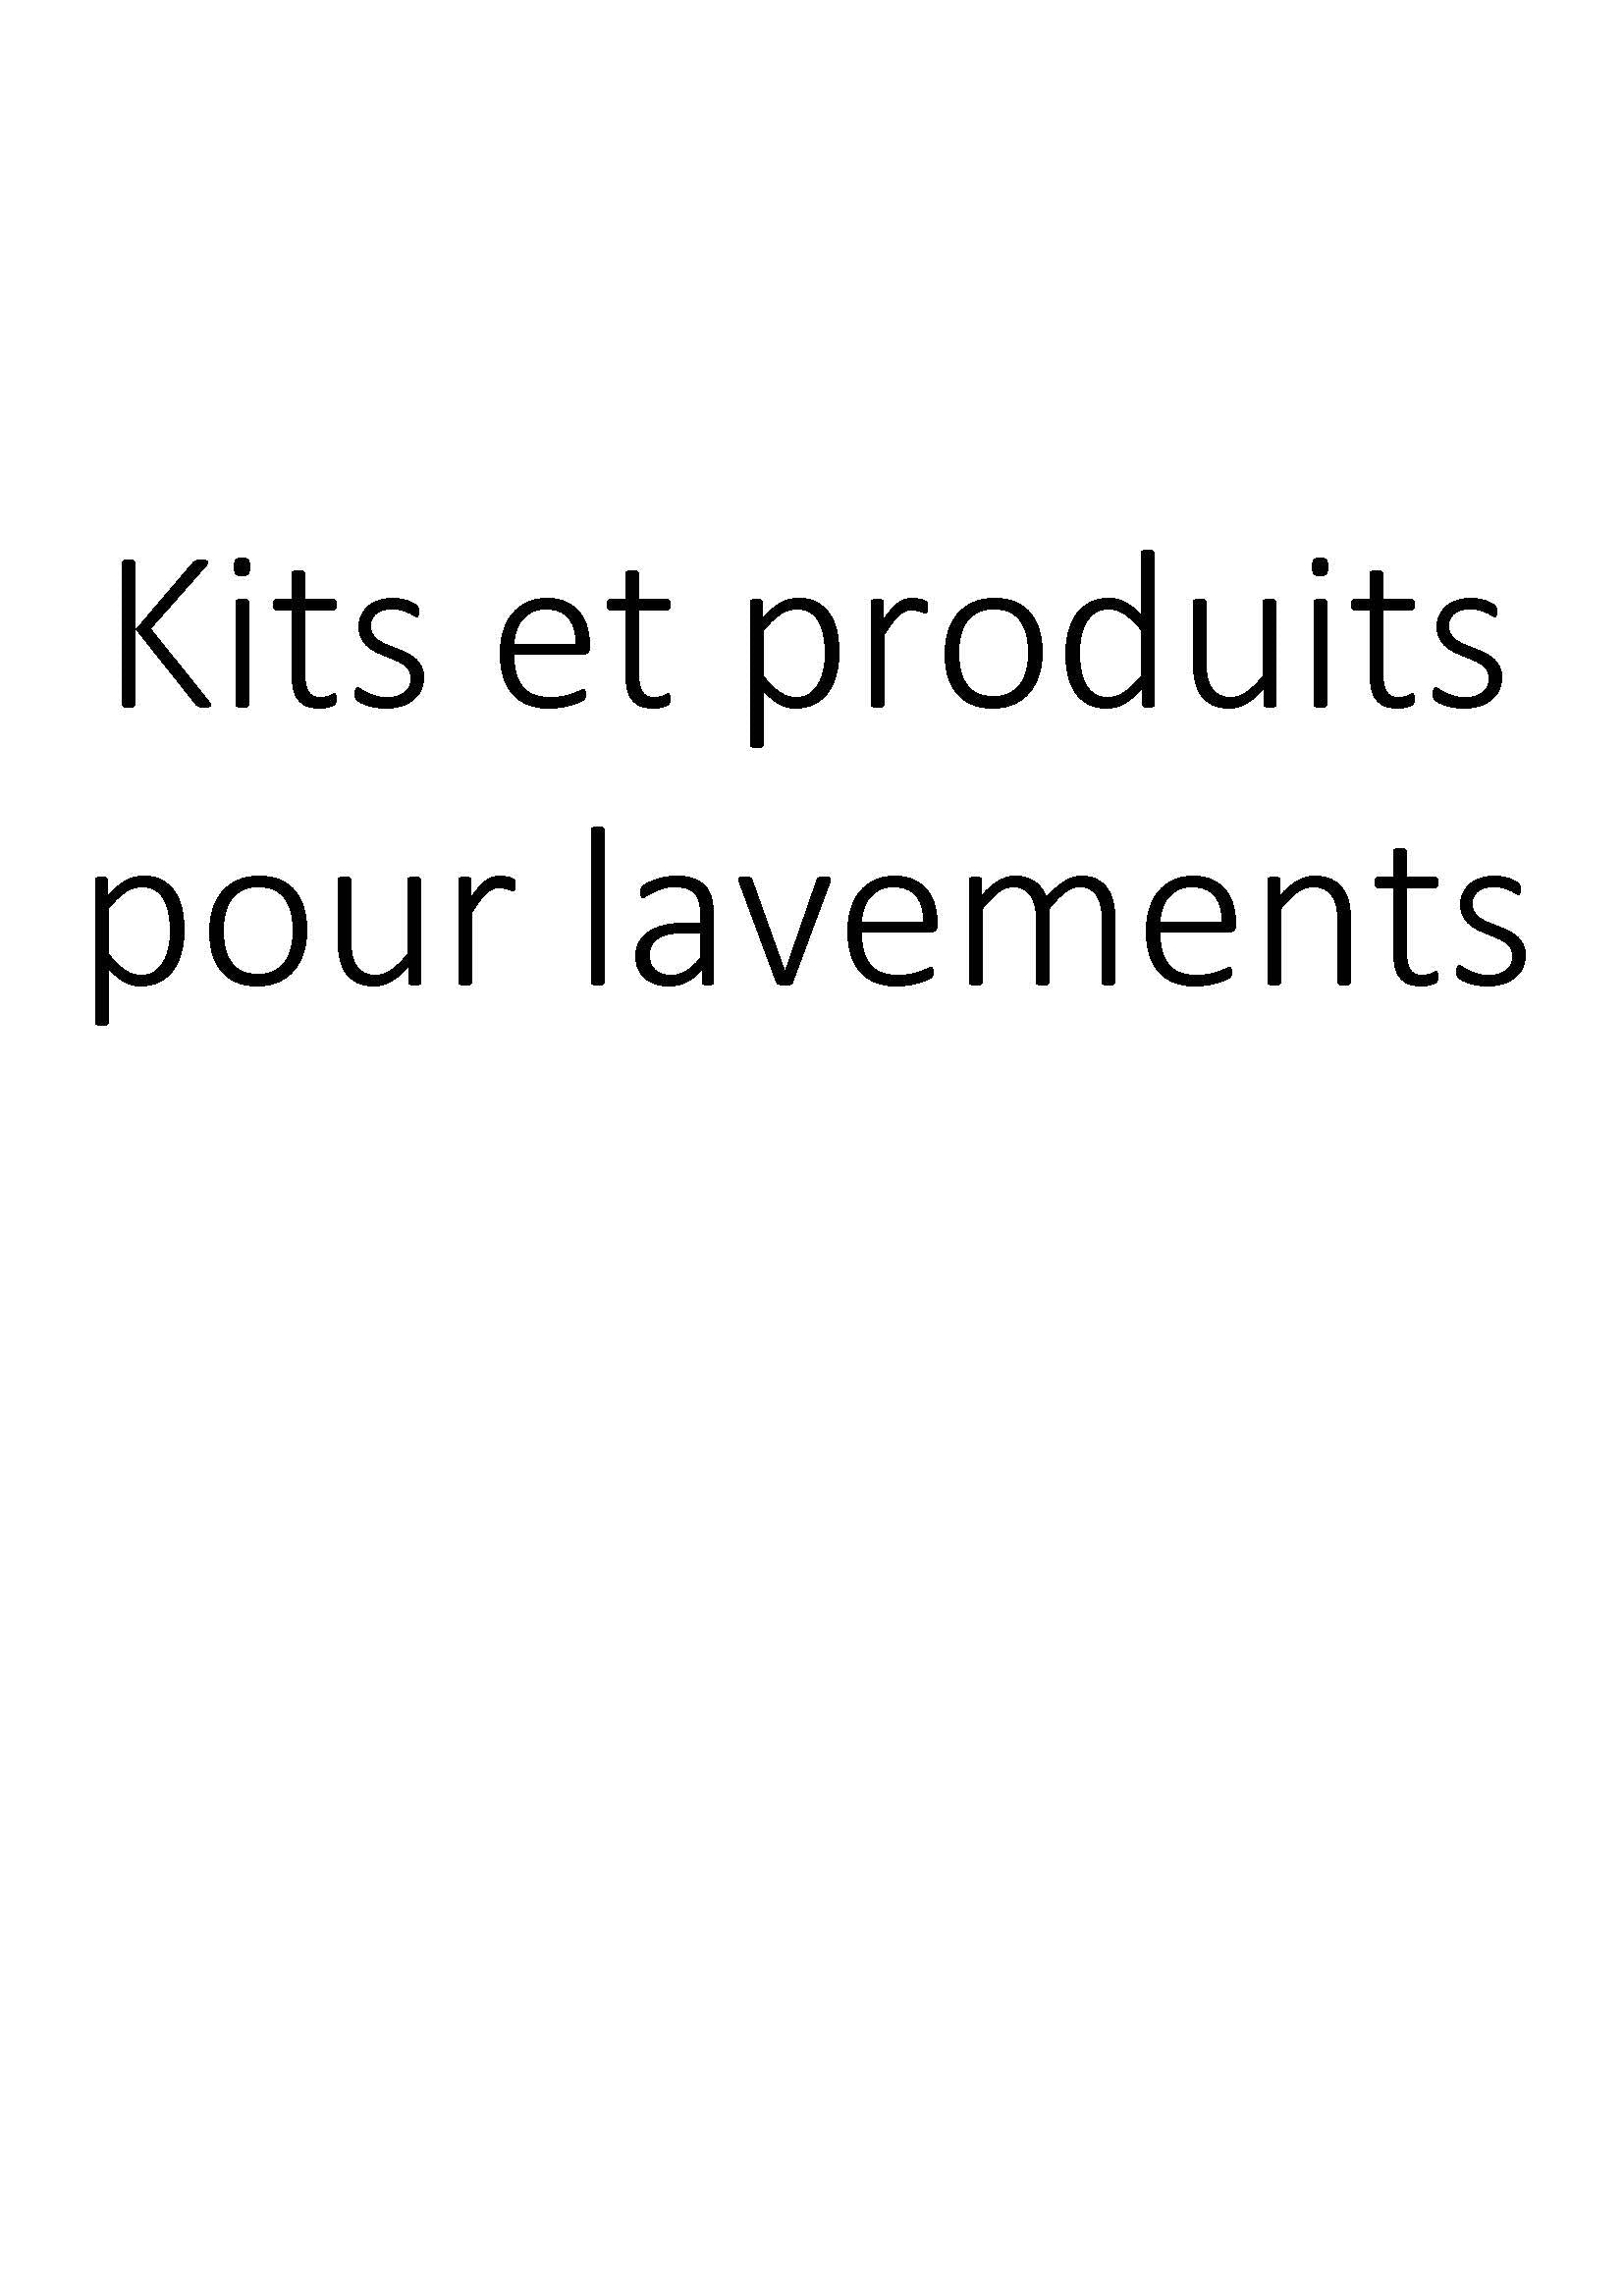 Kits et produits pour lavements clicktofournisseur.com